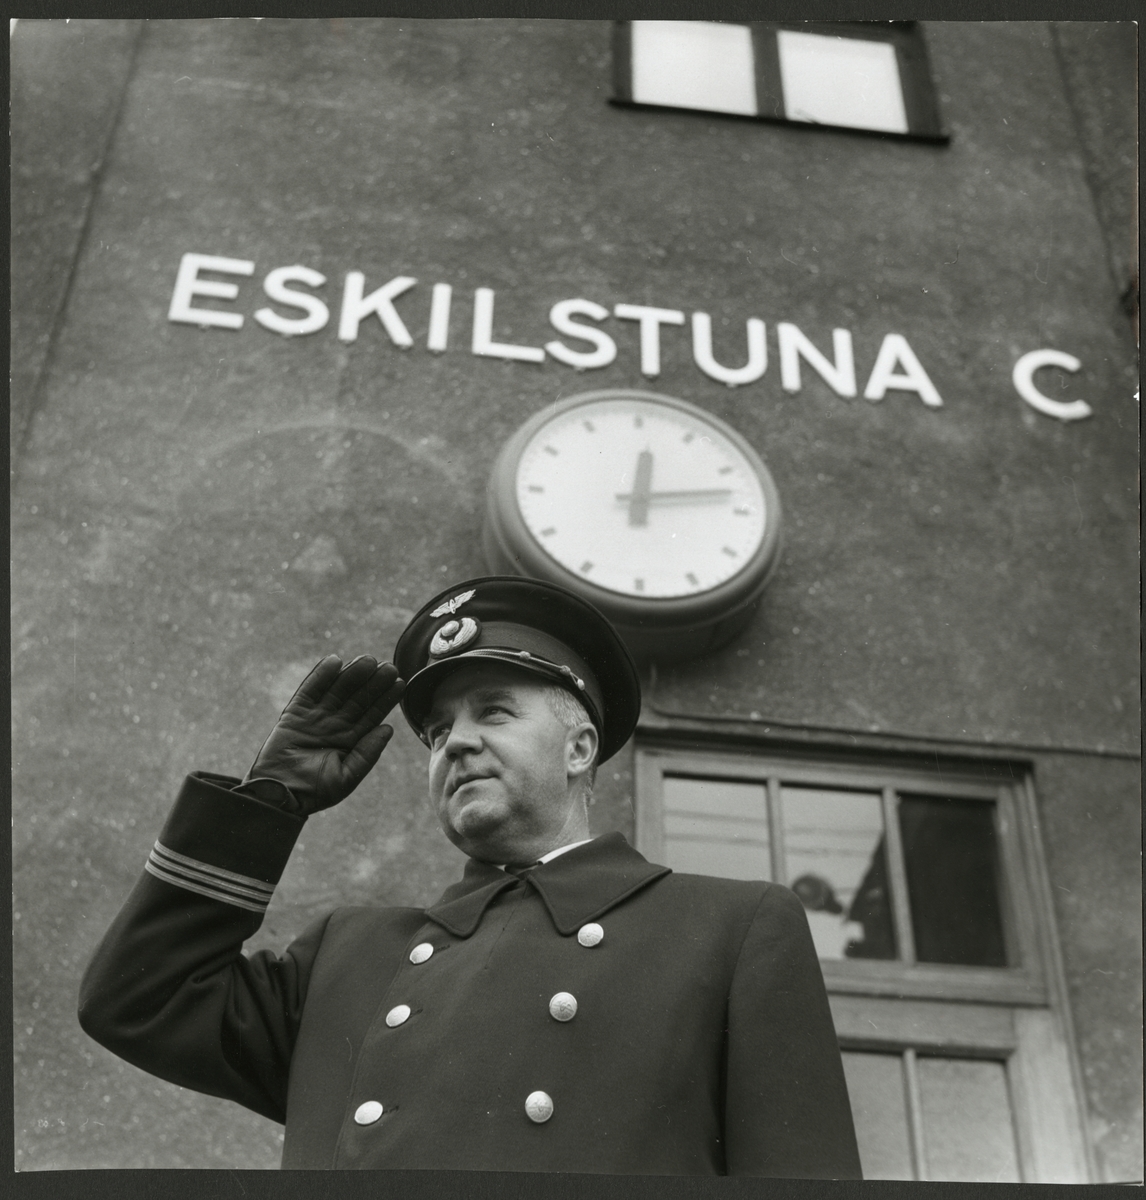 Stins Gustaf Blom gör honnör framför Eskilstuna C stationshus.